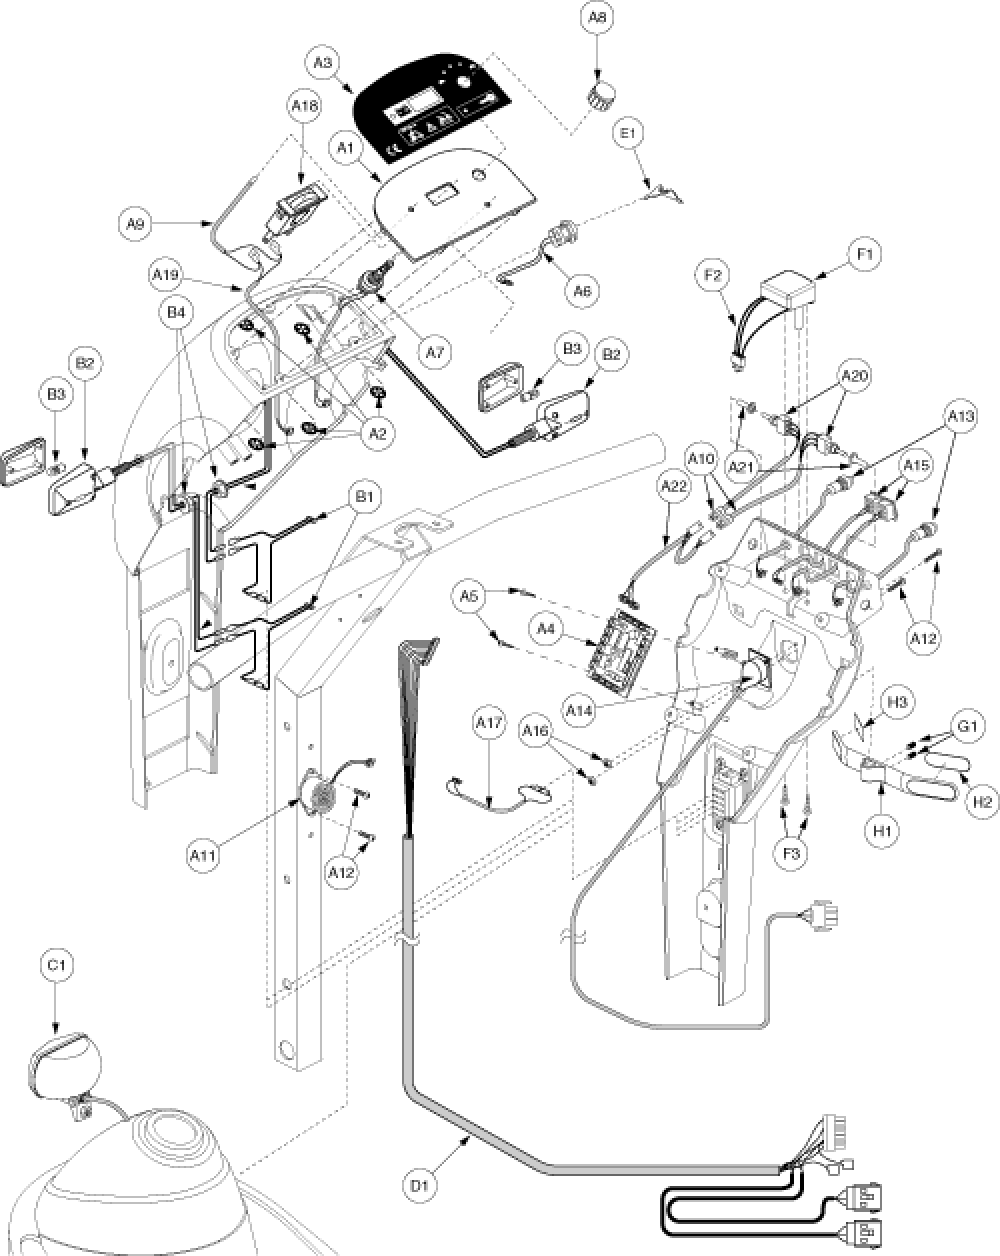 Electronics Assembly - Console Gen. 2 parts diagram